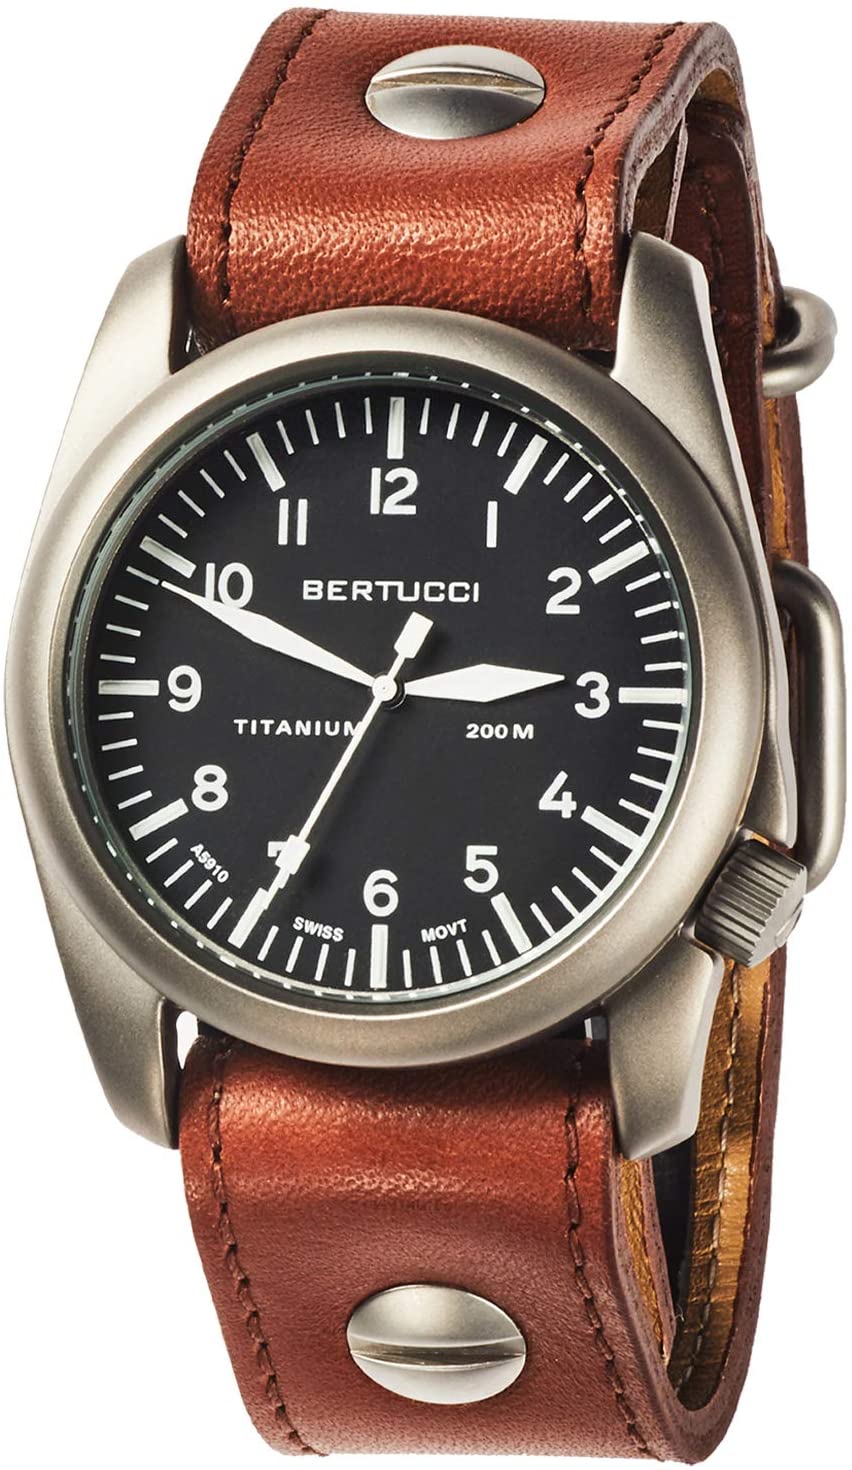 BERTUCCI A-4T Aero Vintage Watch Black/Ti-Tan w/Screws Band 13401